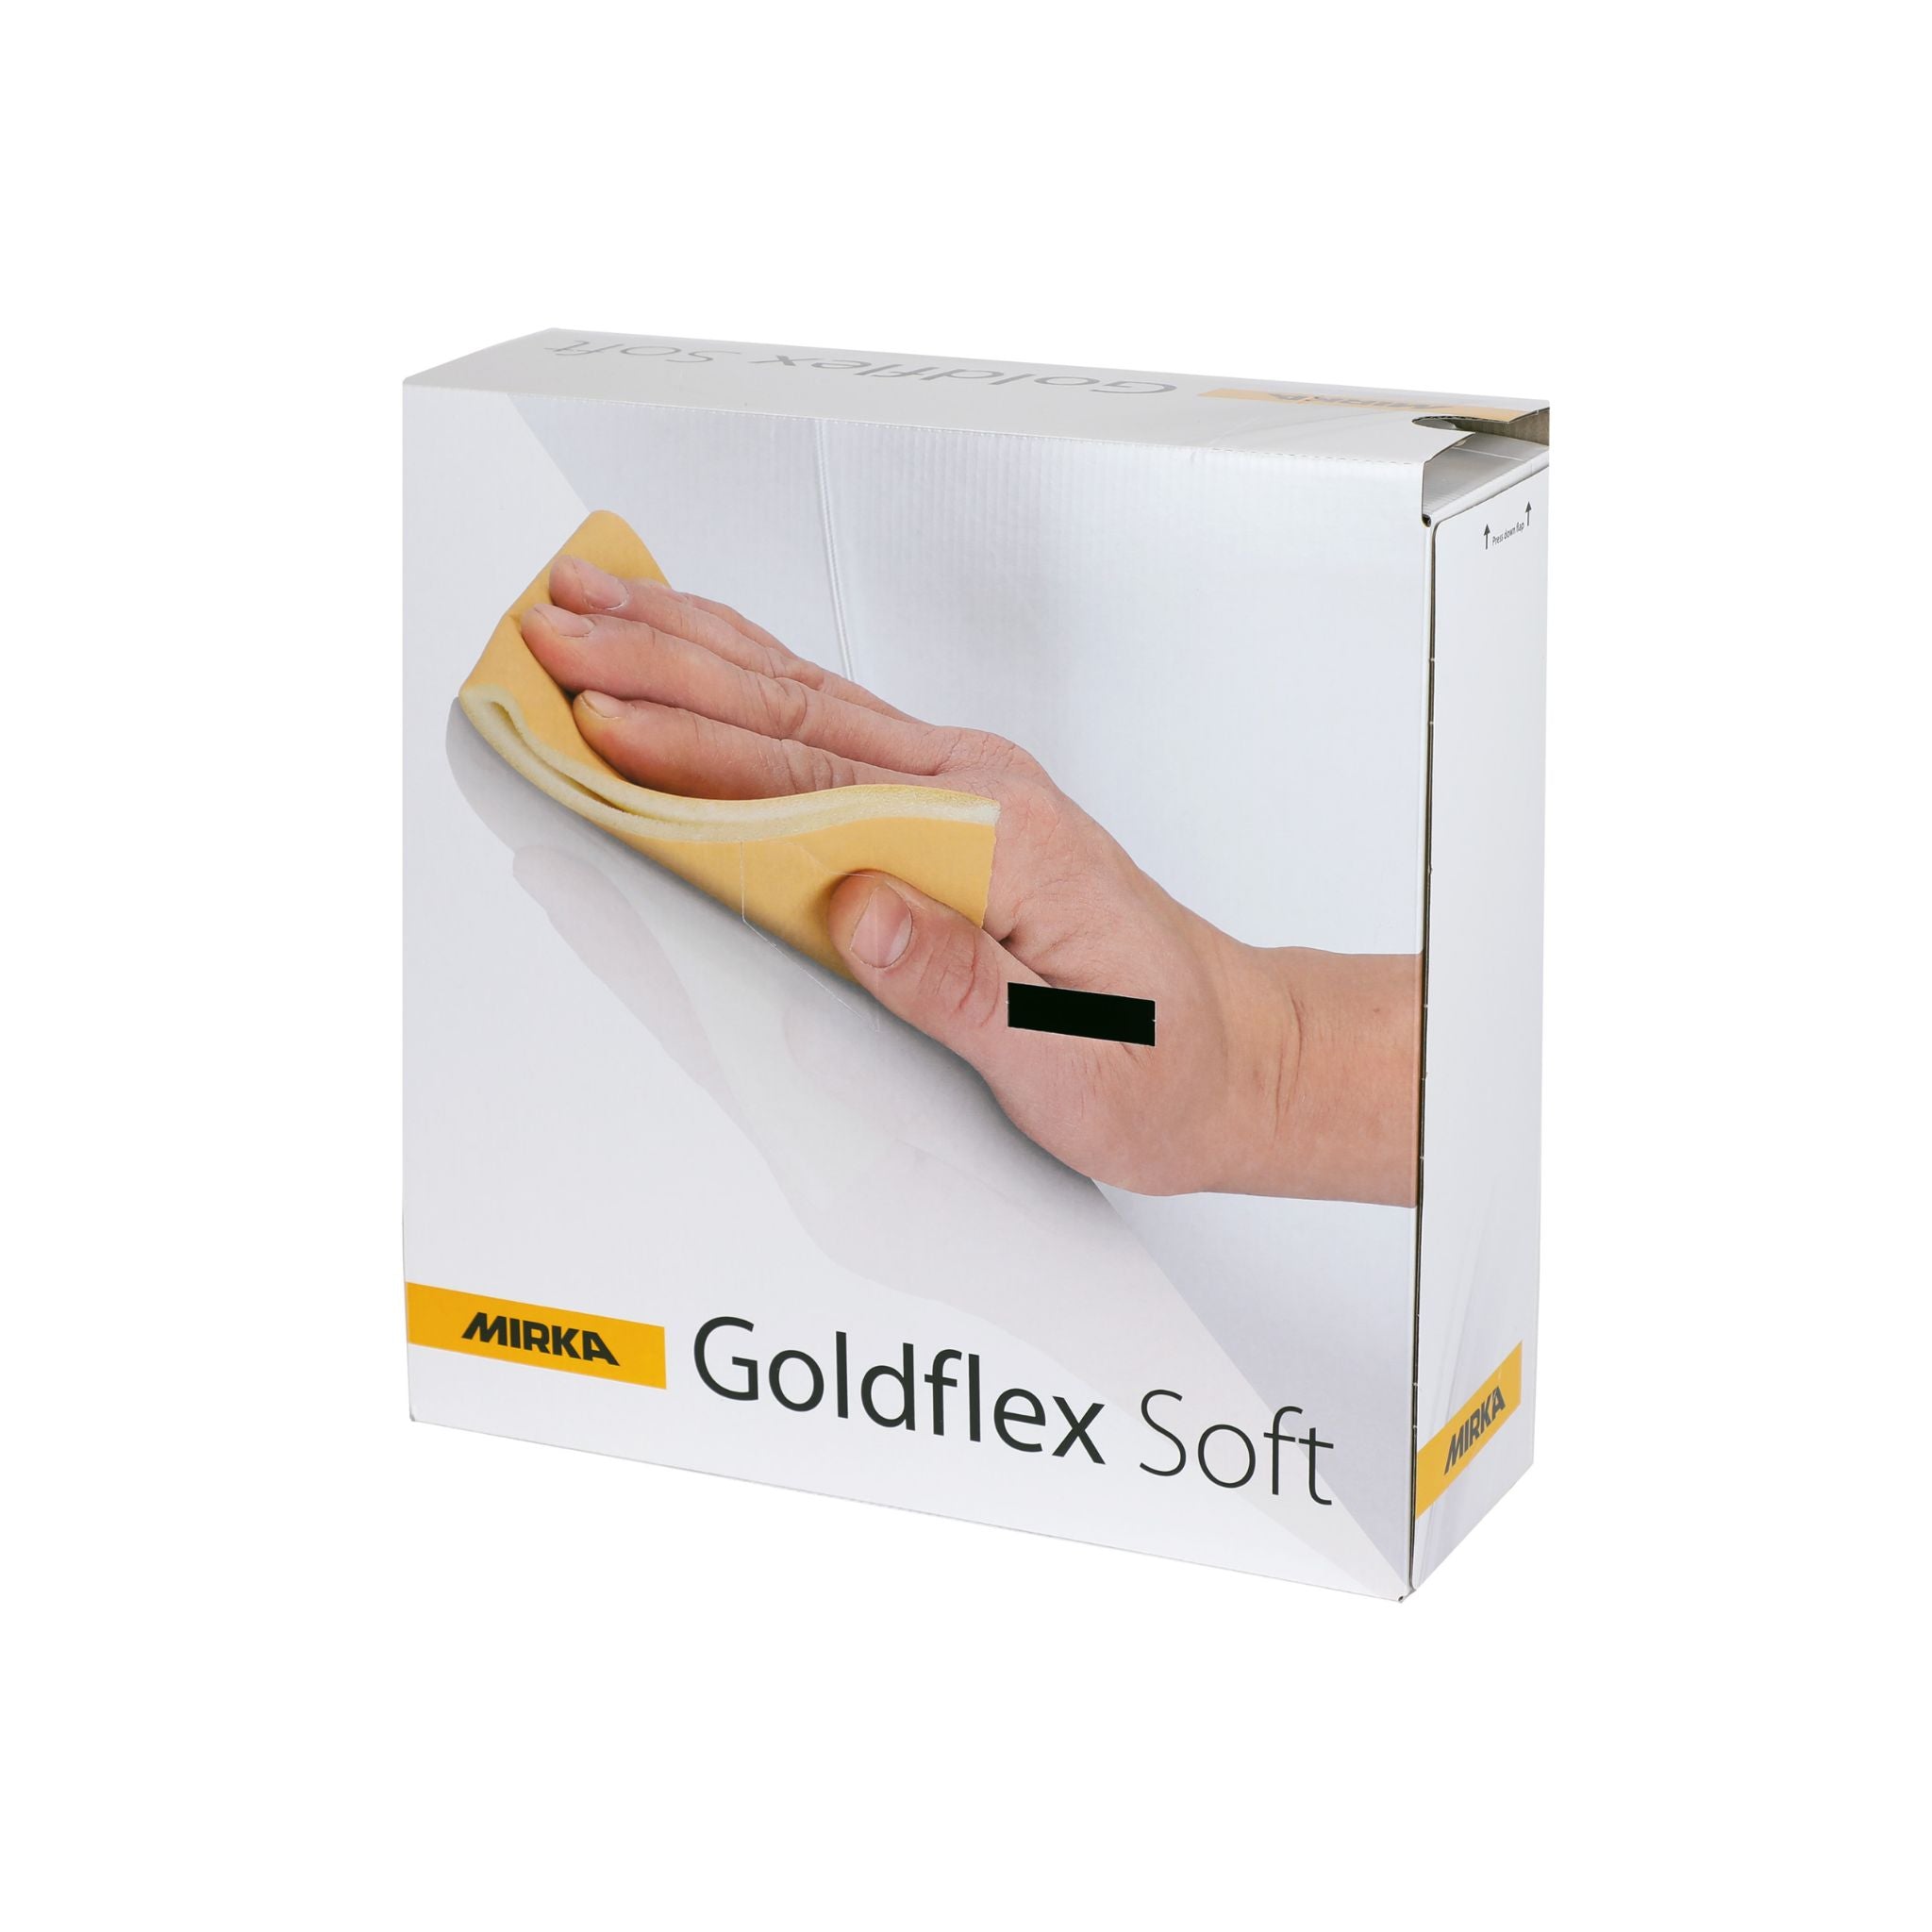 Mirka Goldflex Soft 115 x 125mm Abrasive Pads (Roll of 200) - Restorate-6416868594645